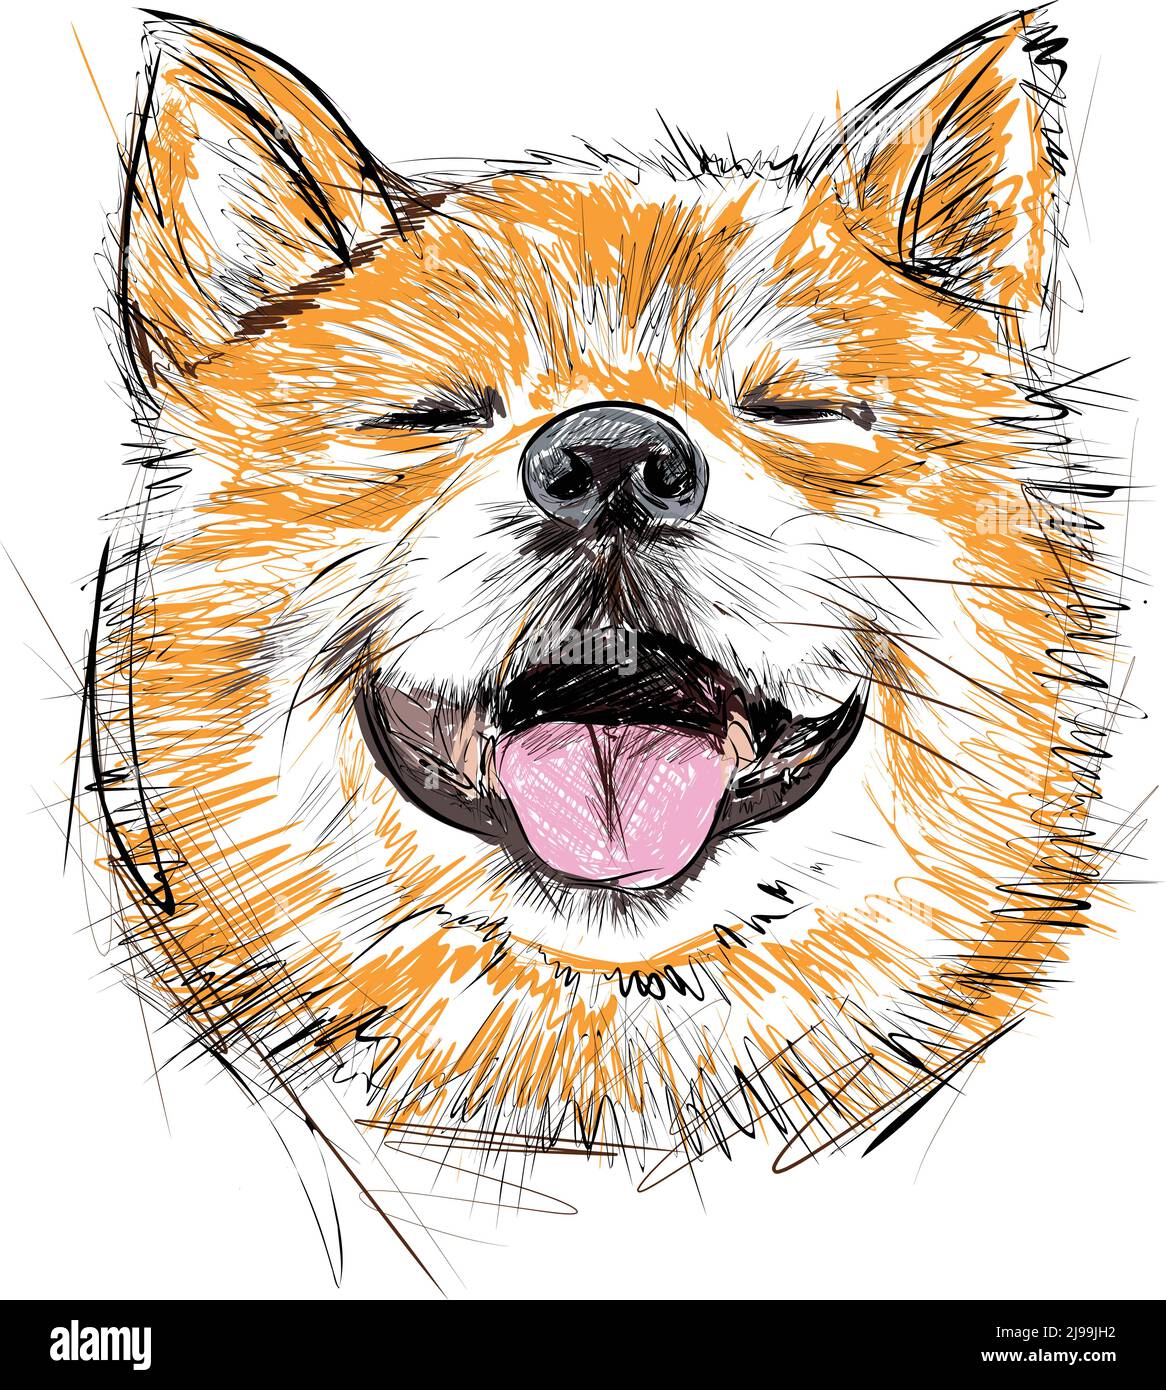 Illustrazione dei marcatori di schizzo disegnati a mano del cane Shiba Inu. Ritratto di сute animale domestico sorridente. Illustrazione vettoriale Illustrazione Vettoriale